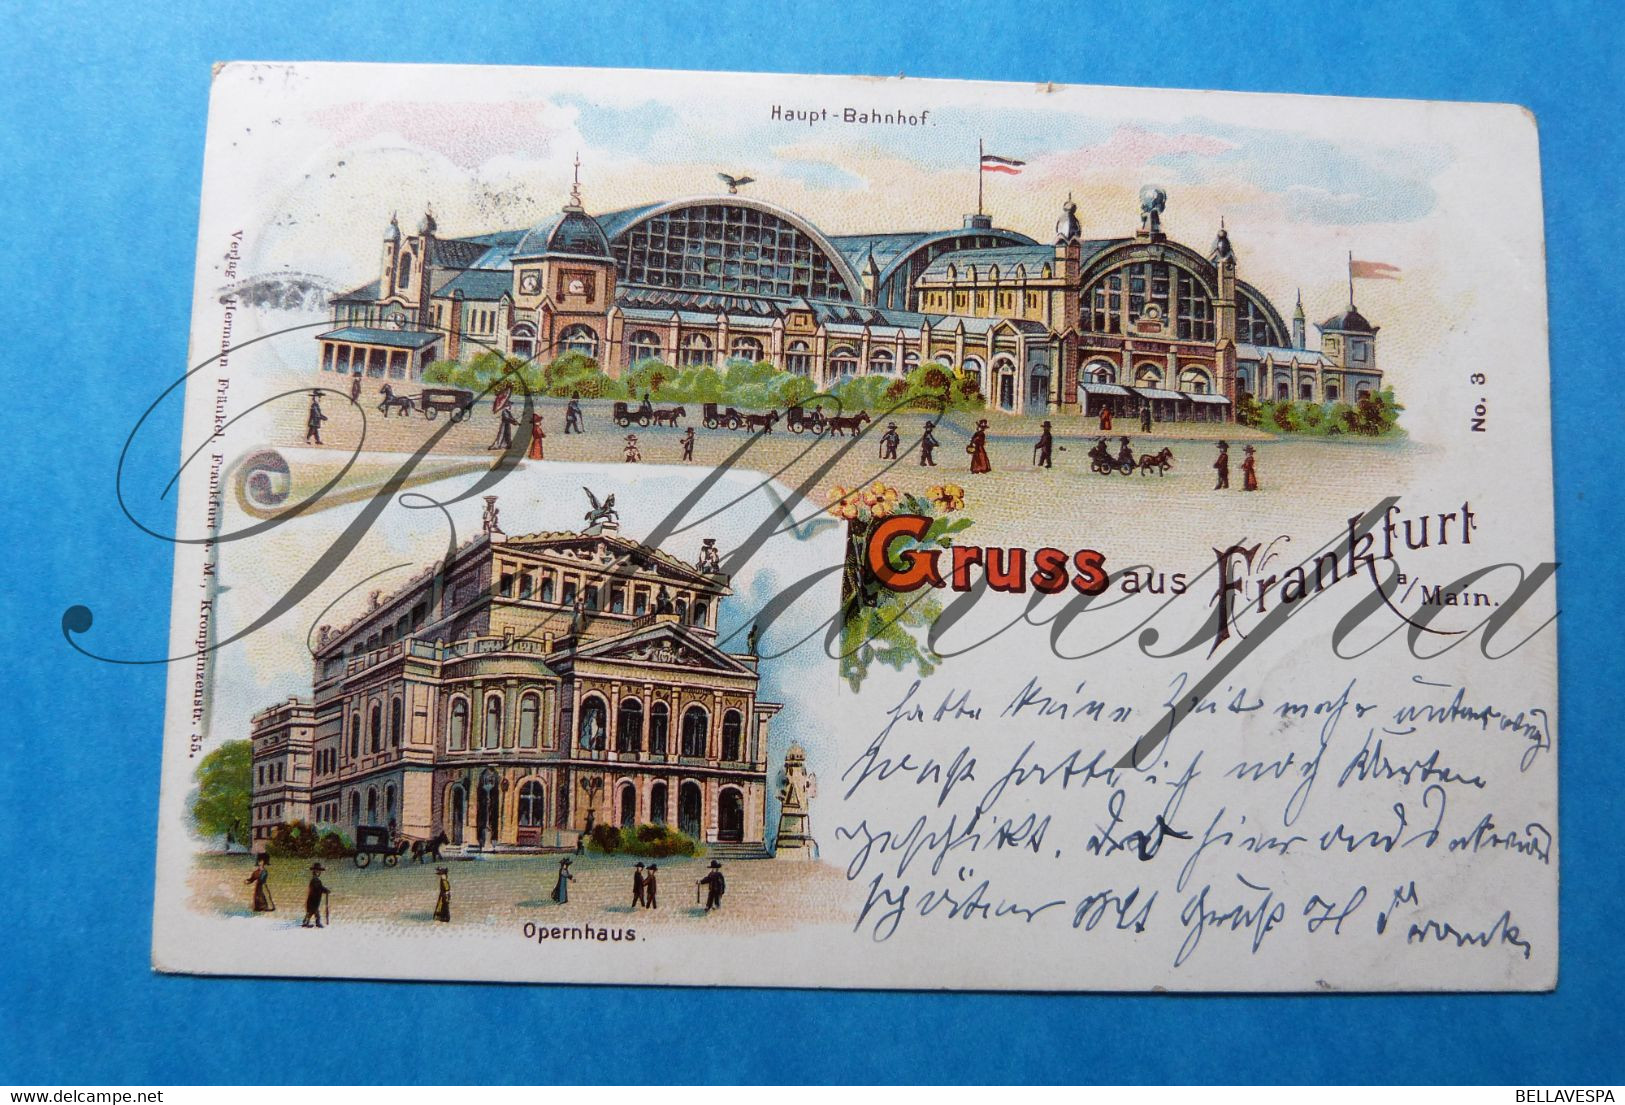 Gruss Aus Frankfurt. Haupt-Bahnhof  Opernhaus. Edit. H.Fränkel  Darmstadt Postdam 1900 Litho - Gares - Sans Trains